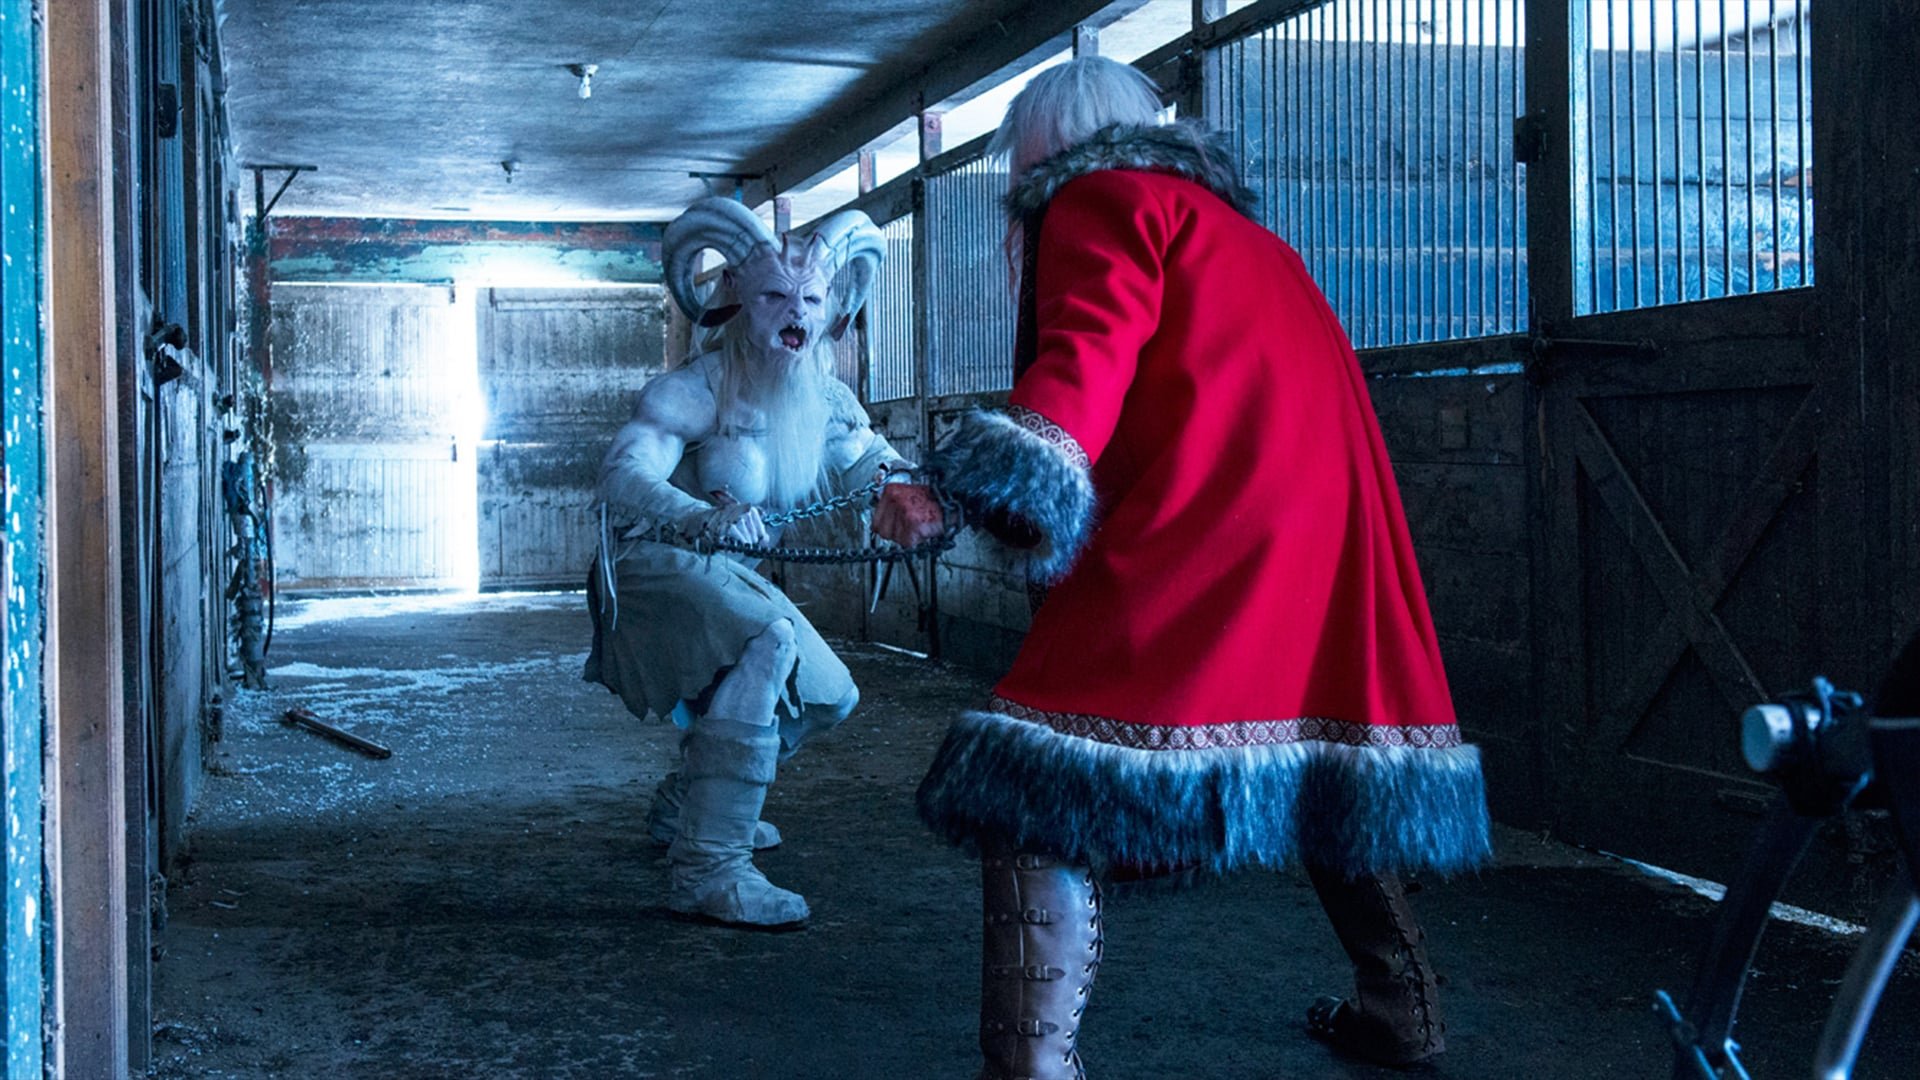 საშობაო საშინელებათა ისტორია / A Christmas Horror Story ქართულად